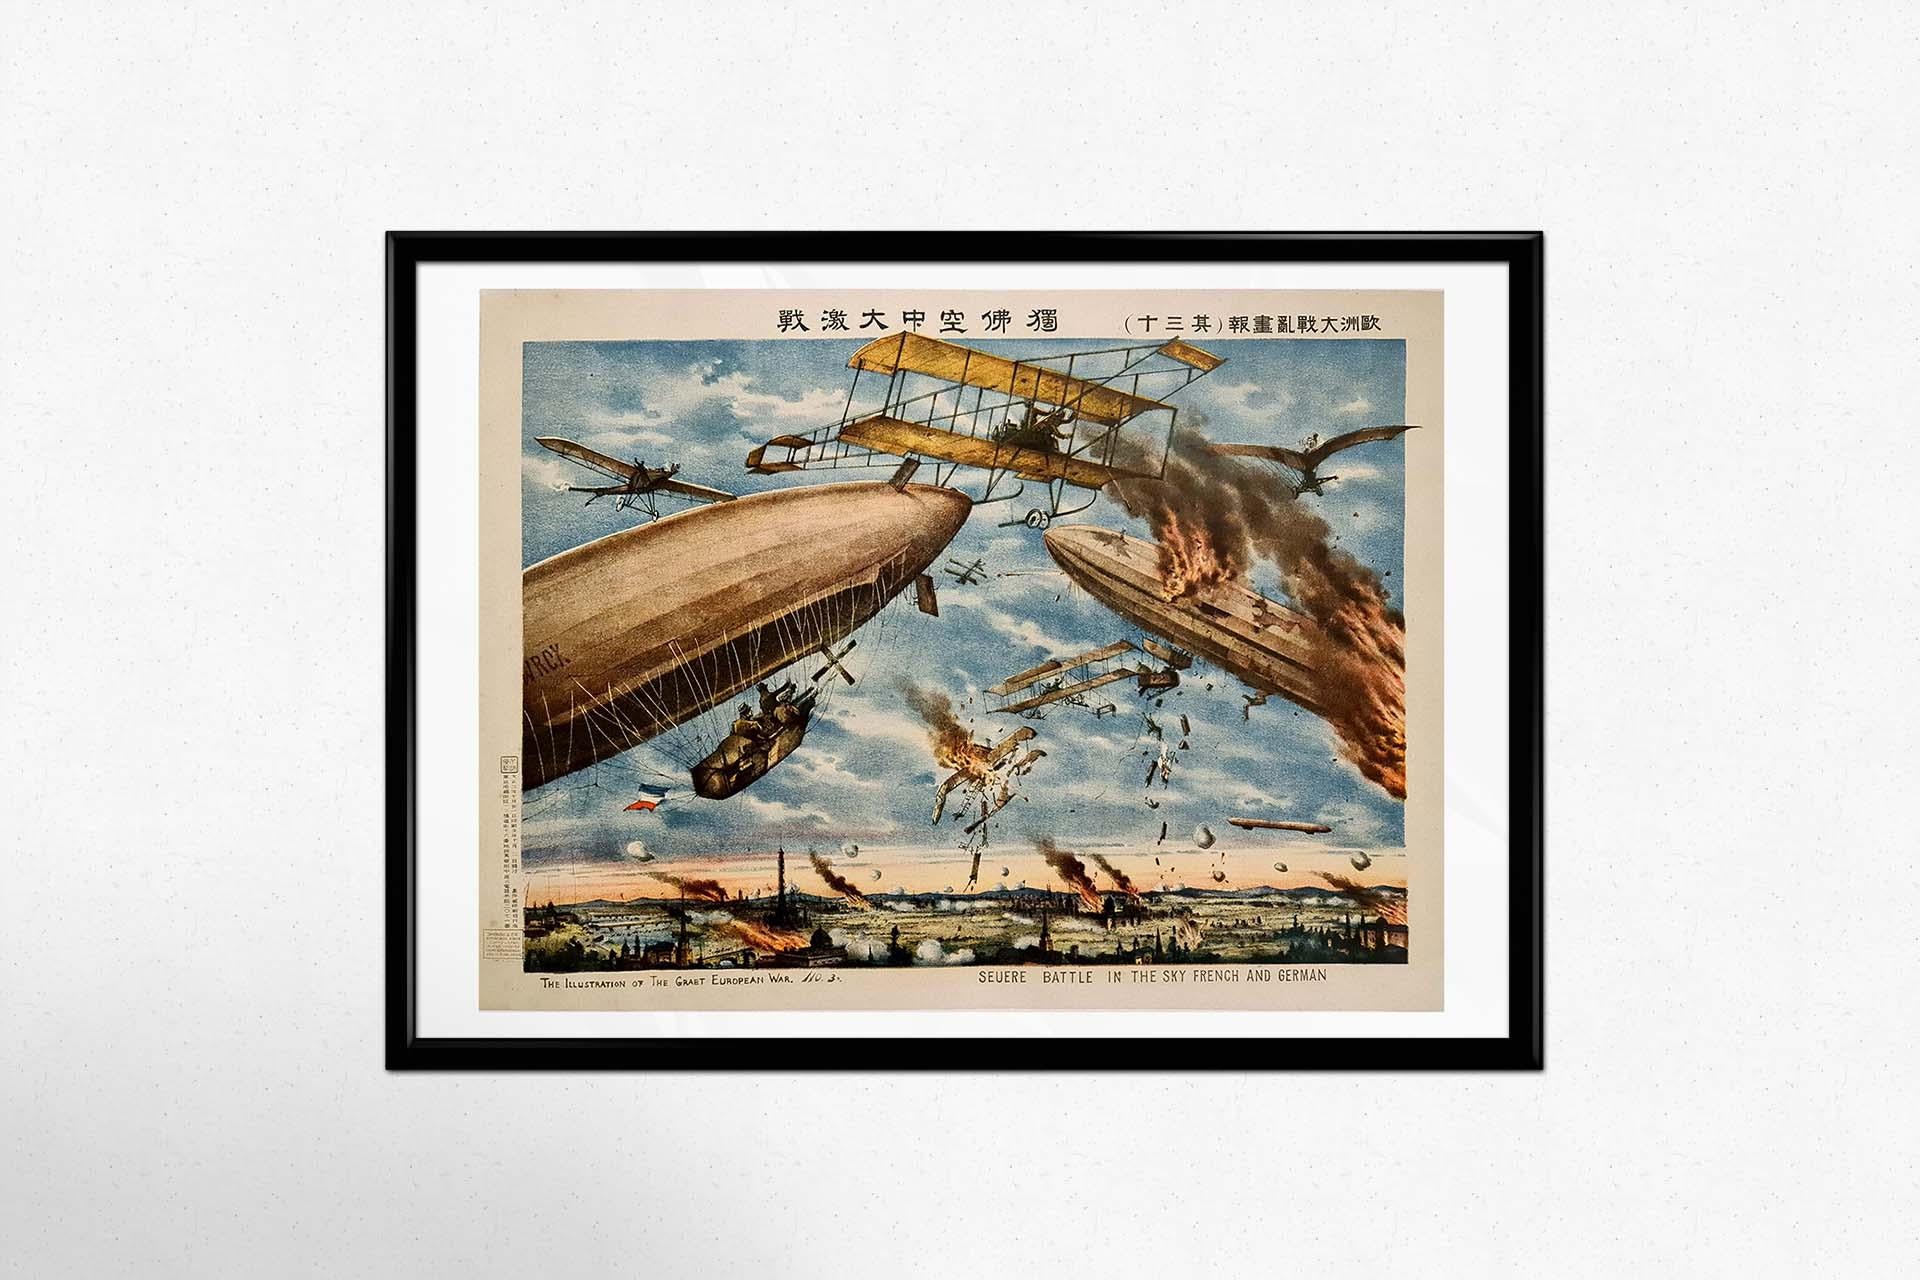 Das Originalplakat von 1914, das die Seeschlacht am Himmel zwischen den französischen und deutschen Streitkräften darstellt, bietet einen eindrucksvollen Einblick in die turbulente Zeit des Großen Europäischen Krieges. Dieses inmitten des Konflikts